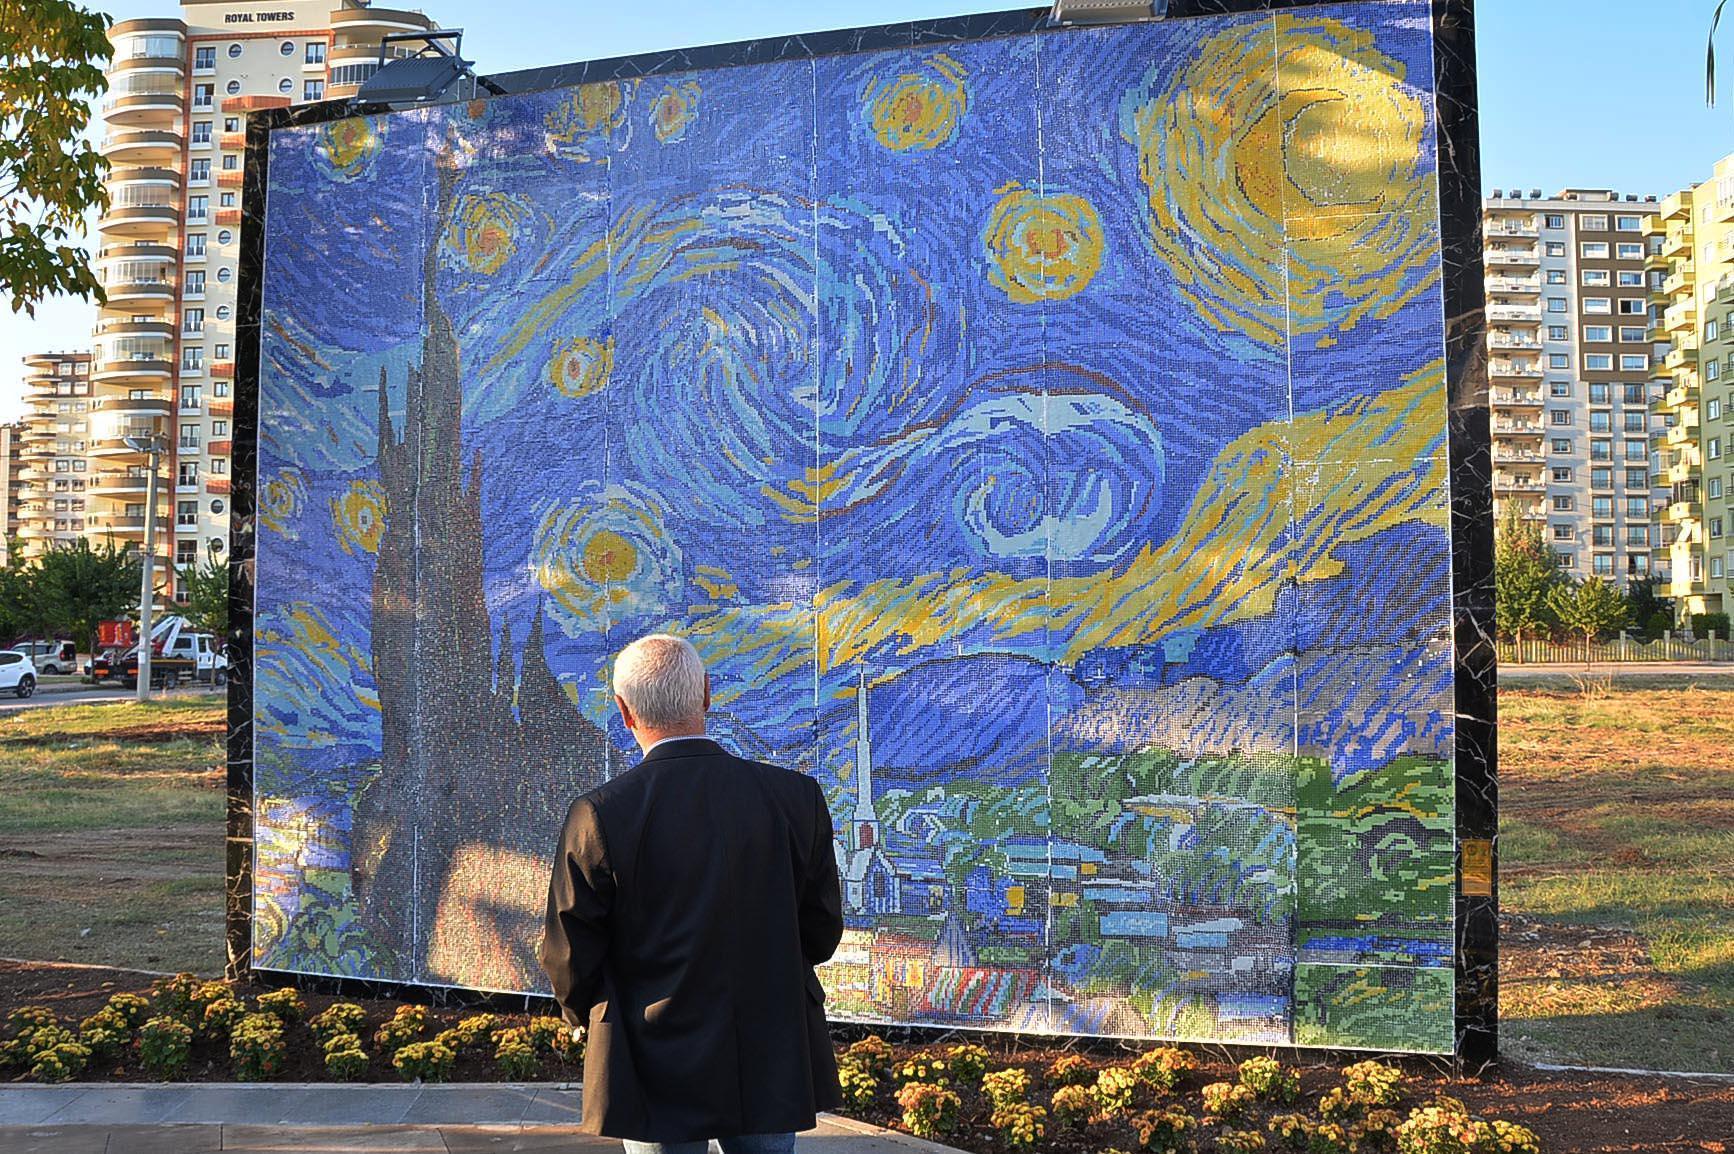 Van Gogh’un Yıldızlı Gece eserinin tablosu için 450 bin mozaik parça kullanıldı